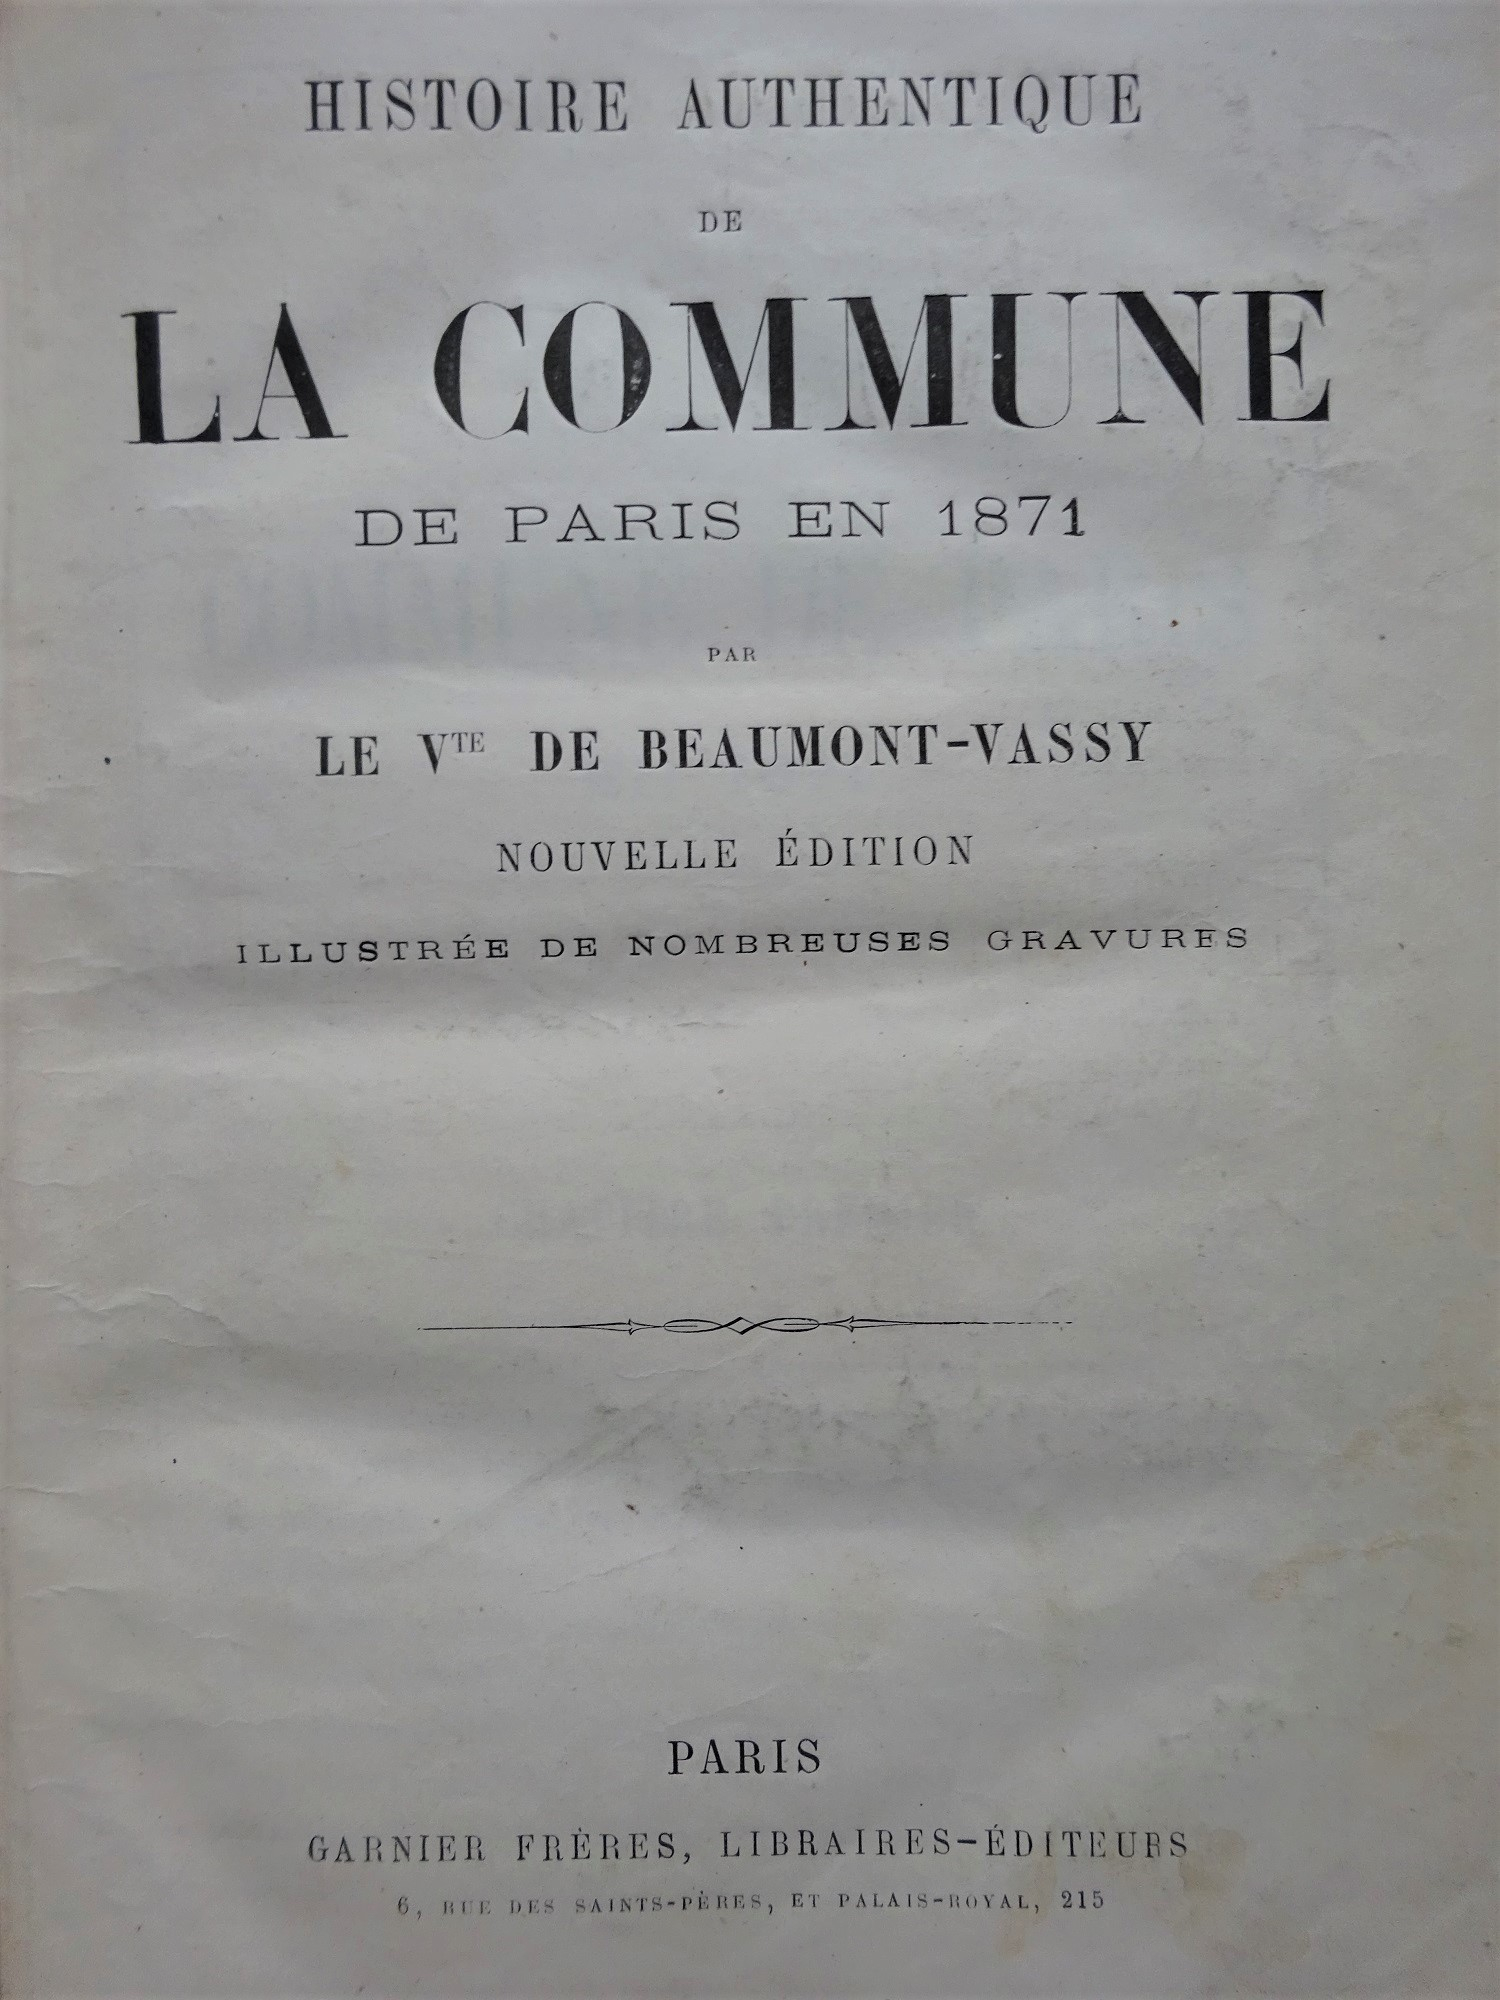 Histoire authentique de la Commune de Paris